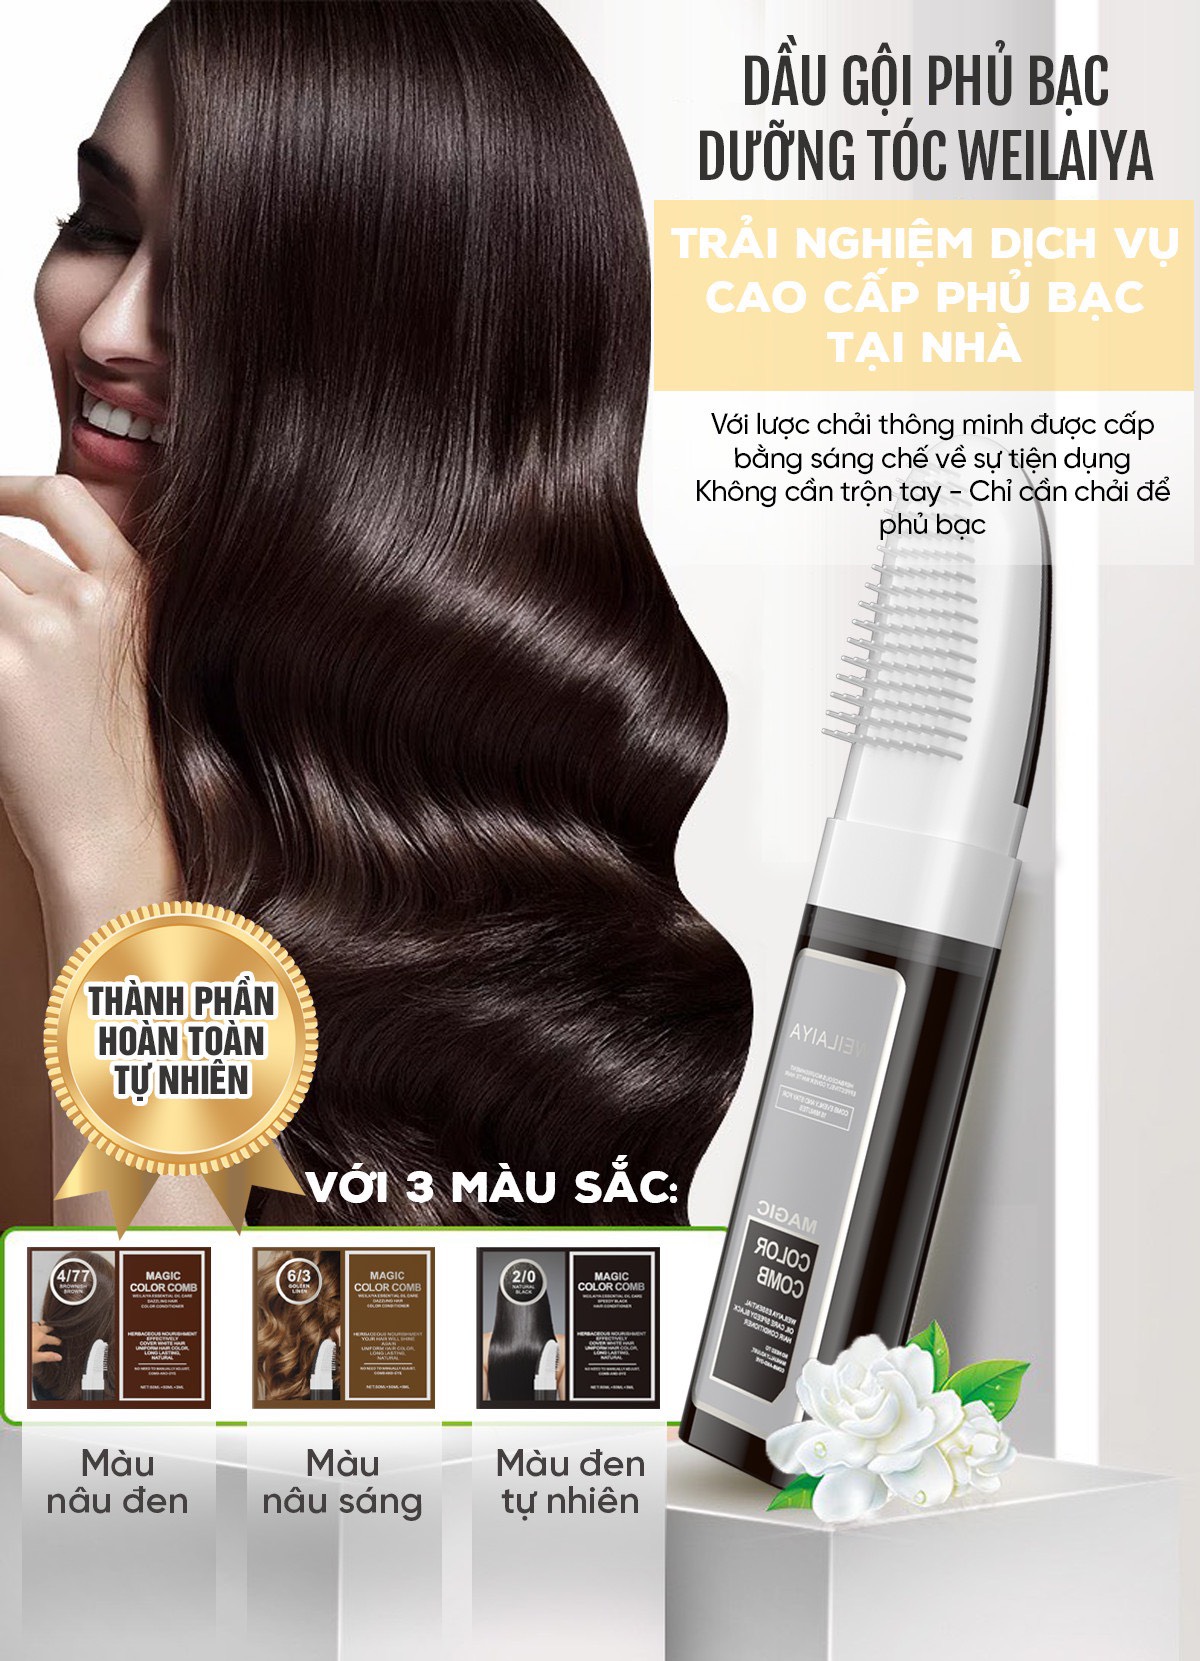 Kem nhuộm dưỡng tóc phủ bạc LOréal Paris Excellence Crème 172ml 63   LOREAL CPD Vietnam